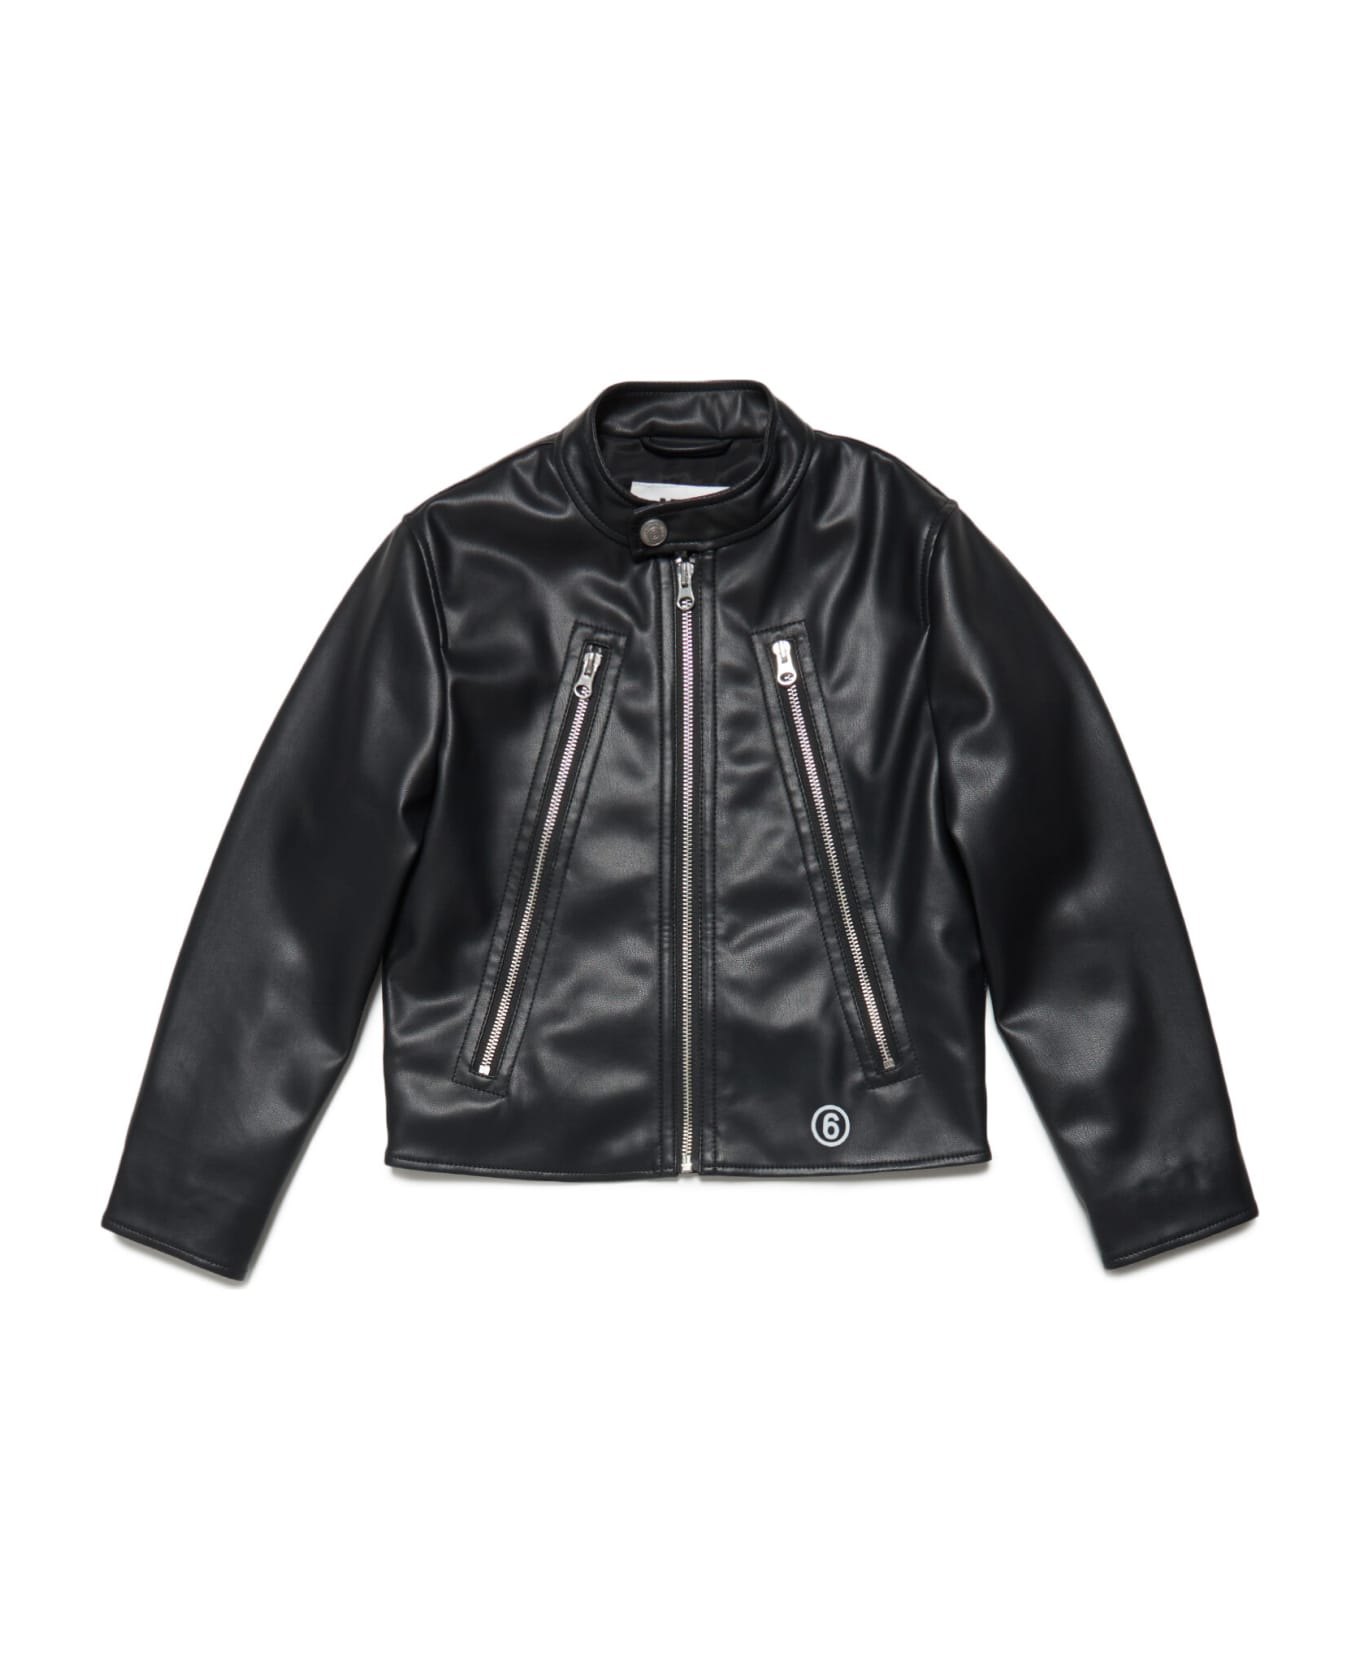 MM6 Maison Margiela Mm6j15au Jacket Maison Margiela Black Fake Leather Jacket With Logo - Black